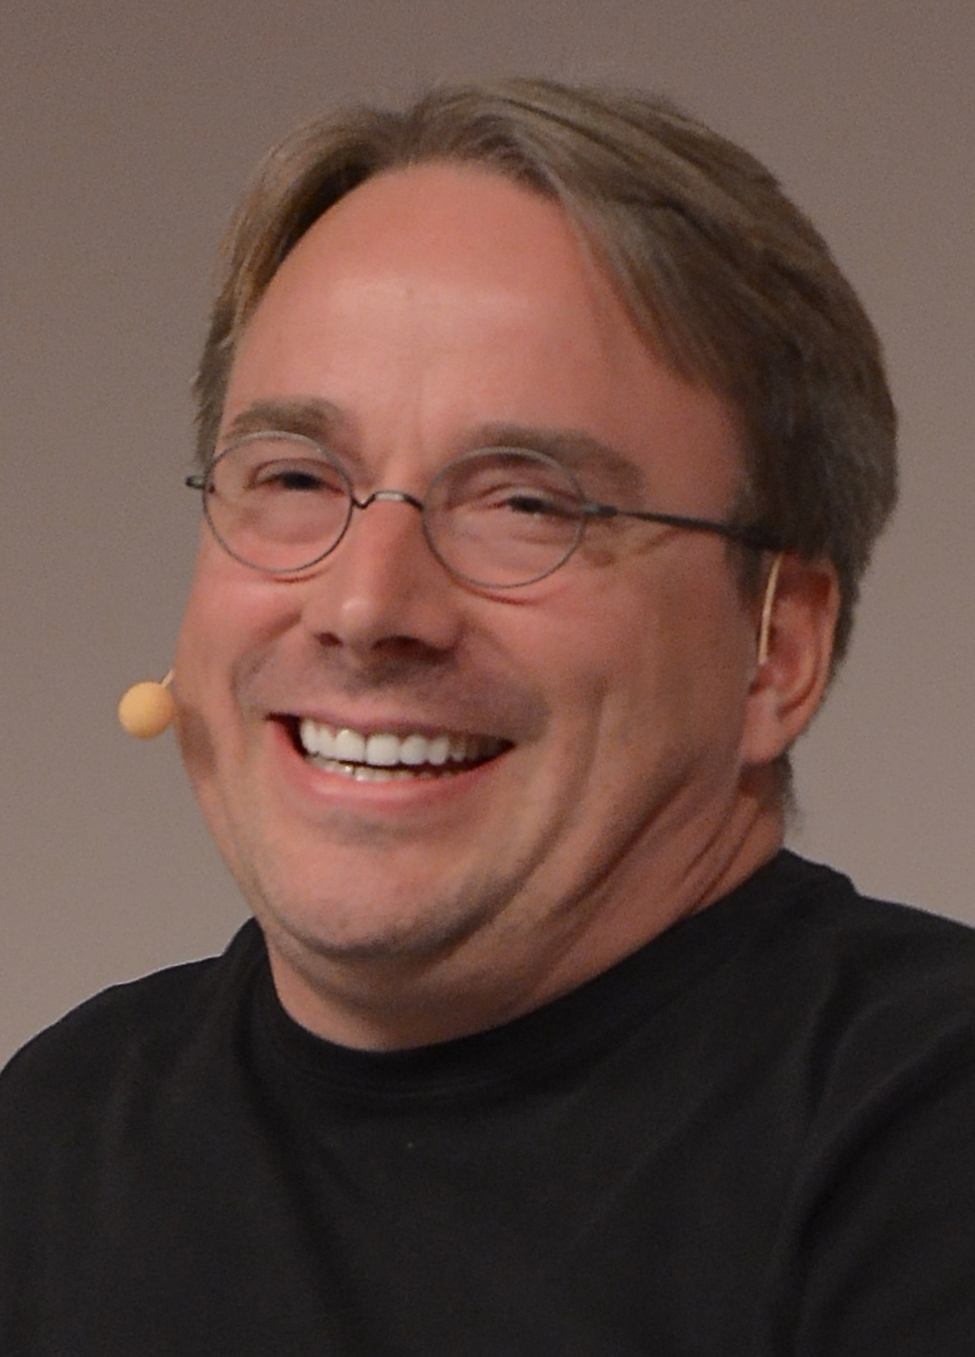 auteur Linus Torvalds de la citation Avant les entreprises commerciales, Linux avait tendance à être assez difficile à installer, car la plupart des développeurs étaient motivés principalement par leurs propres intérêts.